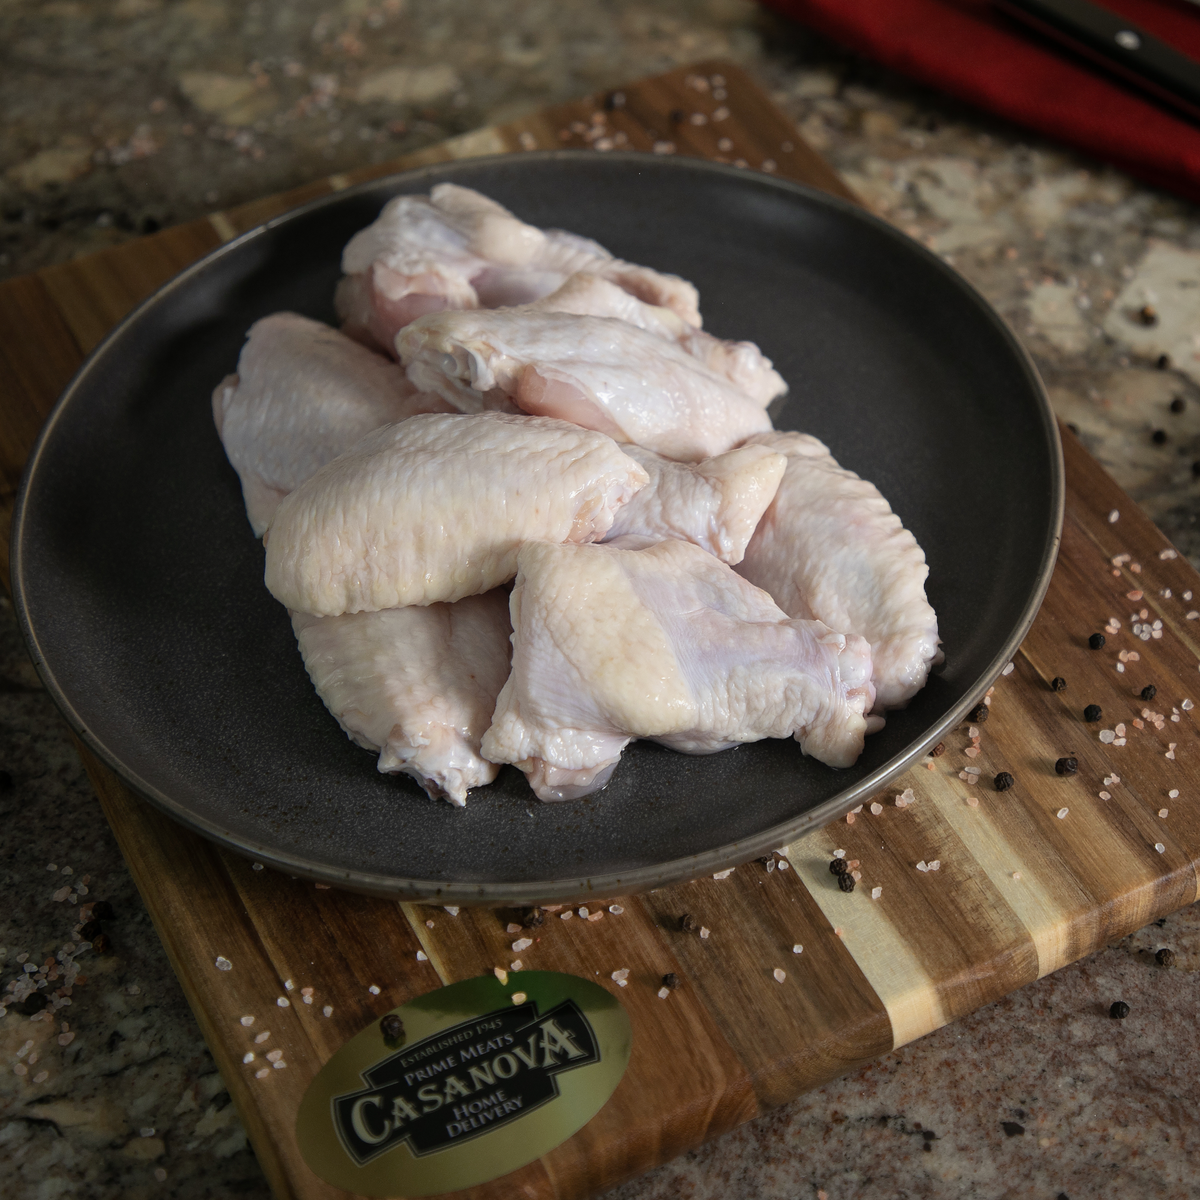 Bell & Evans Chicken Wings – Casanova Meats